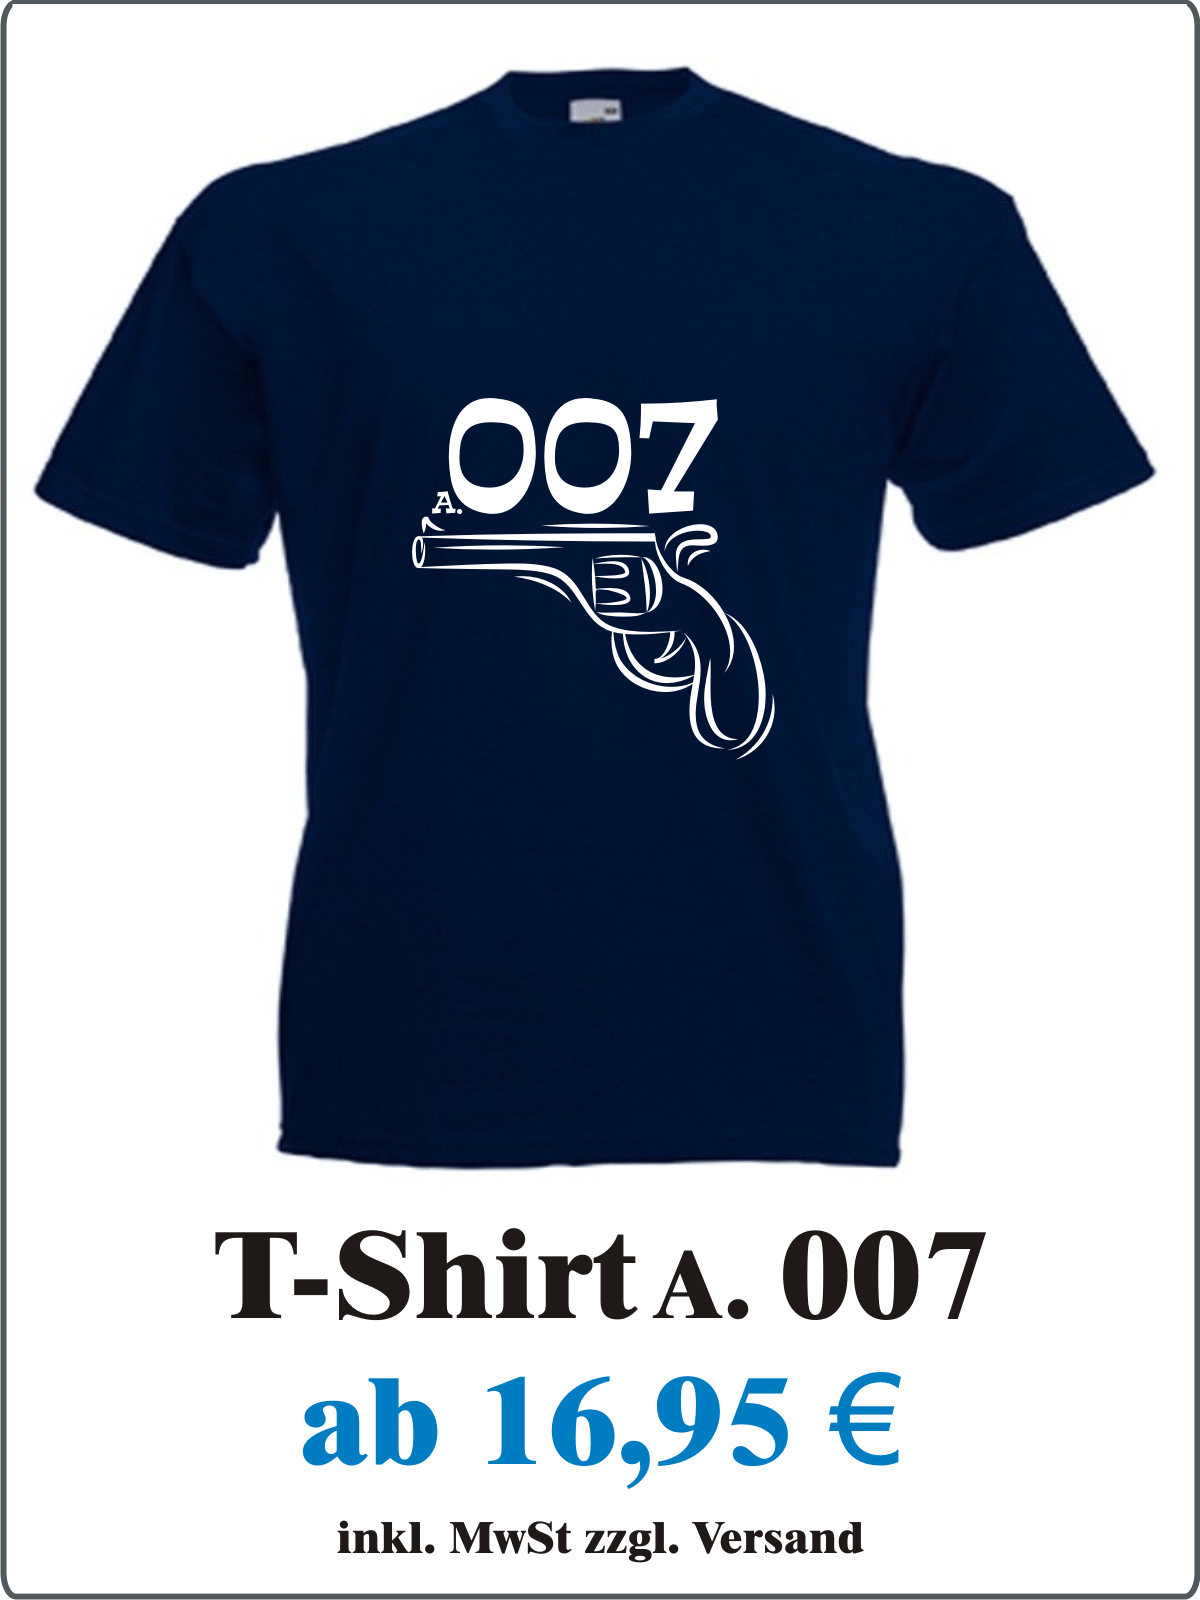 Agent_007_Kostuem_Alternative_Cooles_Herren_T-Shirt_mit_Motiv_Agent_007_Maenner_T-Shirt_mit_Spruch_007_Herren_T-Shirt_fuer_Fasching_Karneval_Angebotstafel